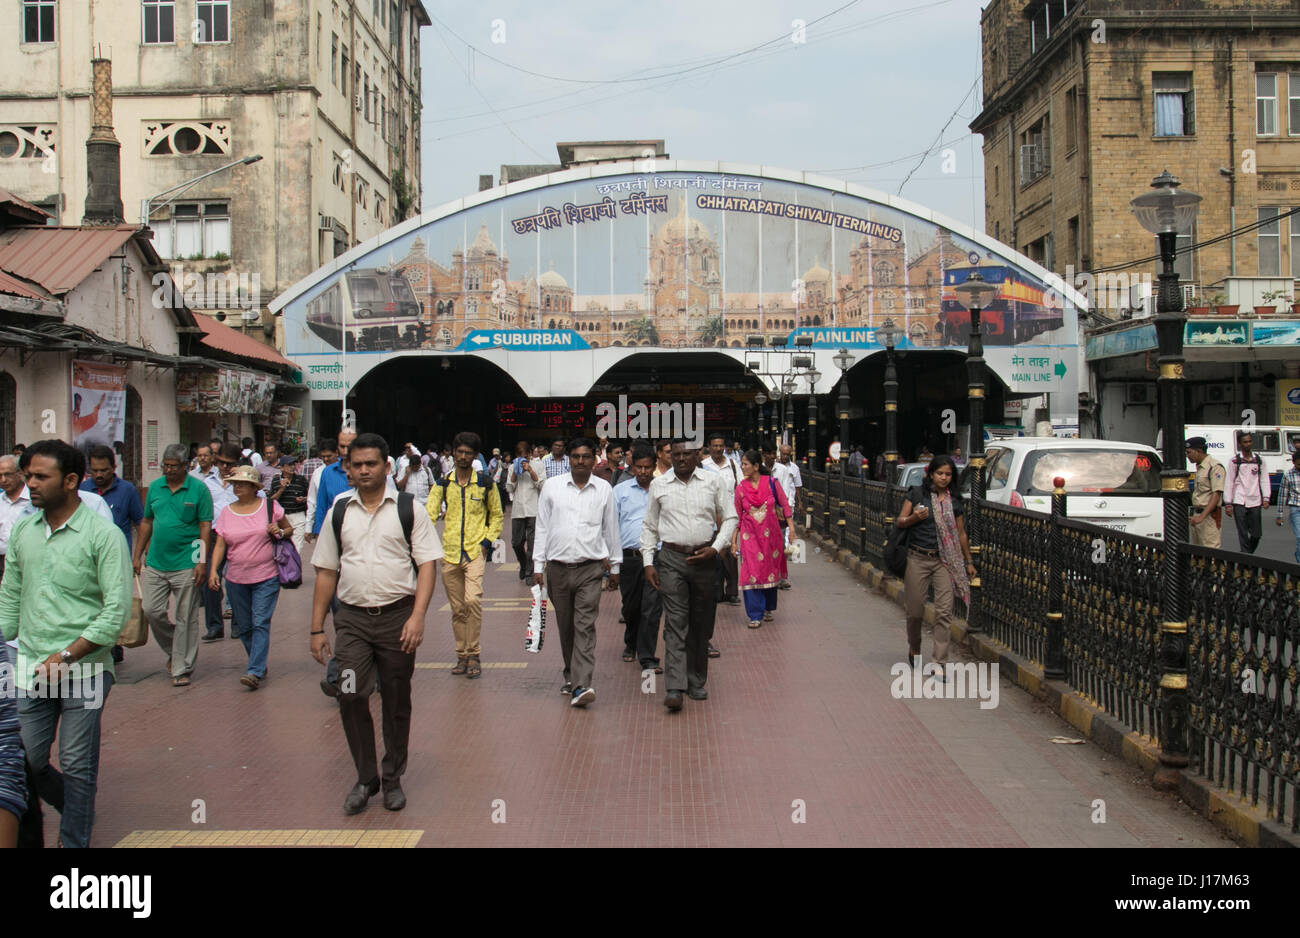 Chattrapati Shivaji or Victoria Terminus, Mumbai, India. Stock Photo